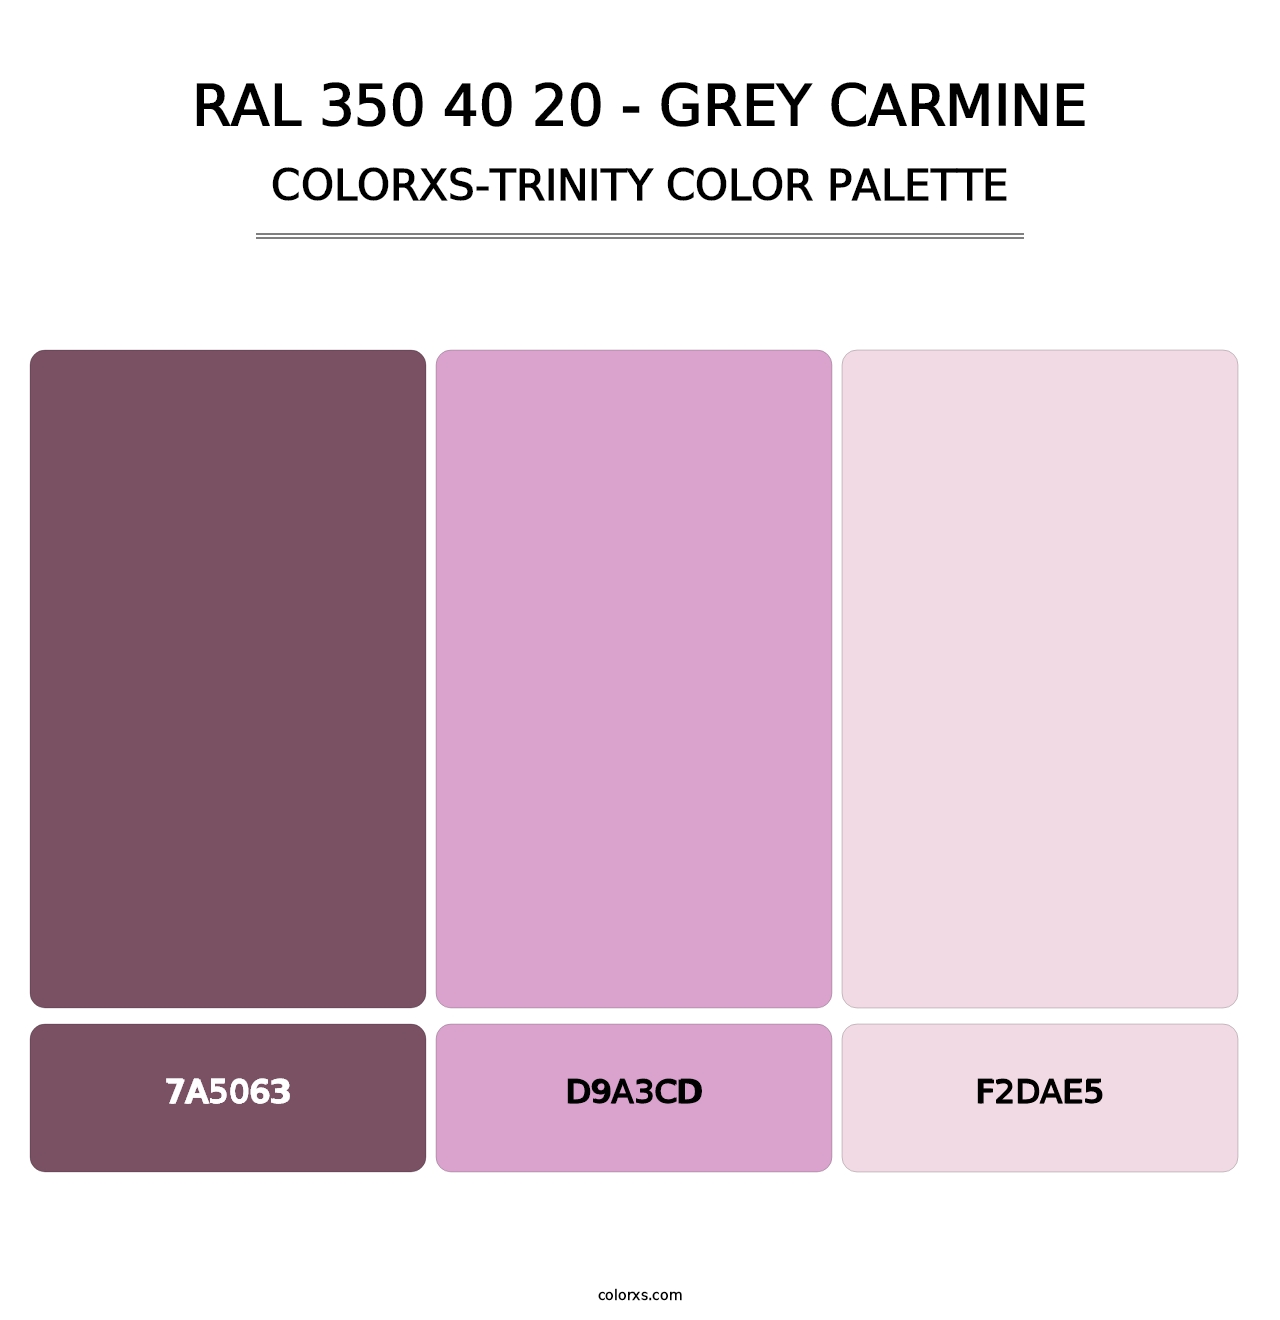 RAL 350 40 20 - Grey Carmine - Colorxs Trinity Palette